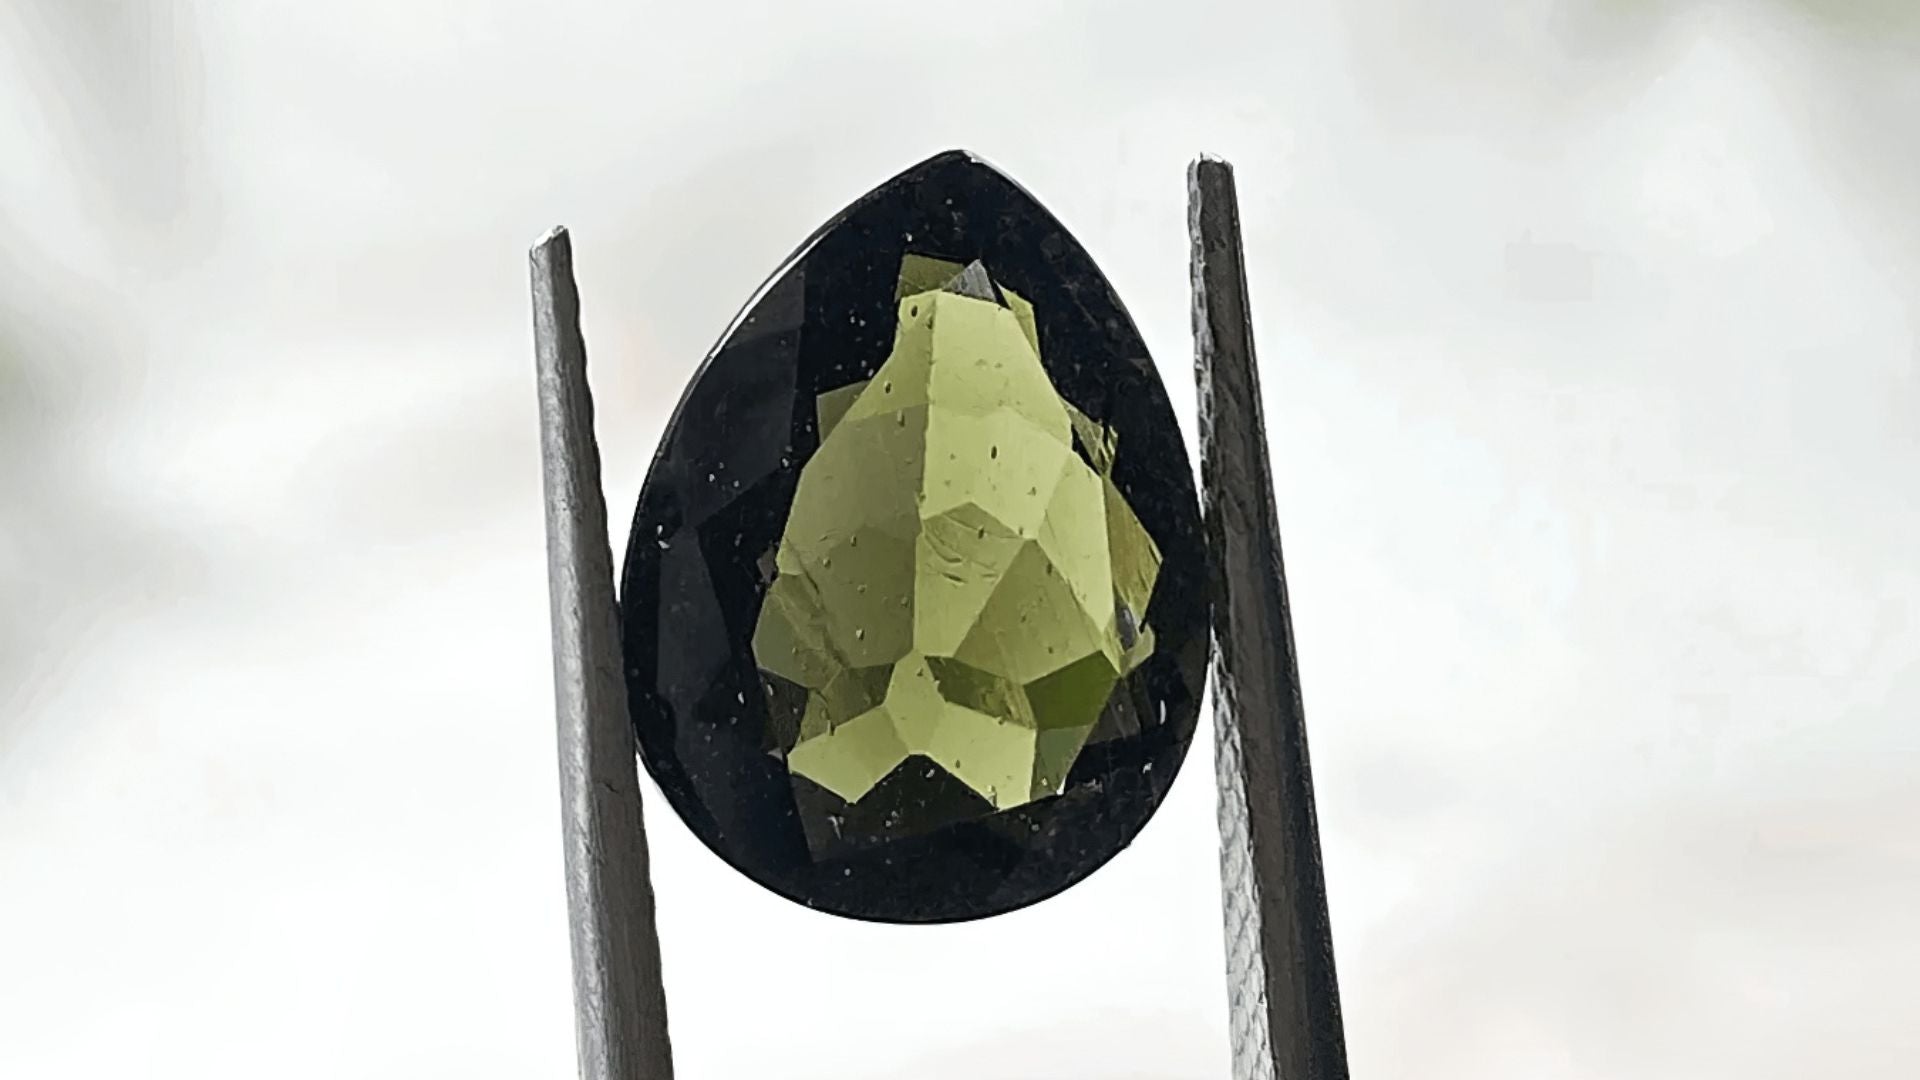 A moldavite teardrop-shaped gem held by tweezers